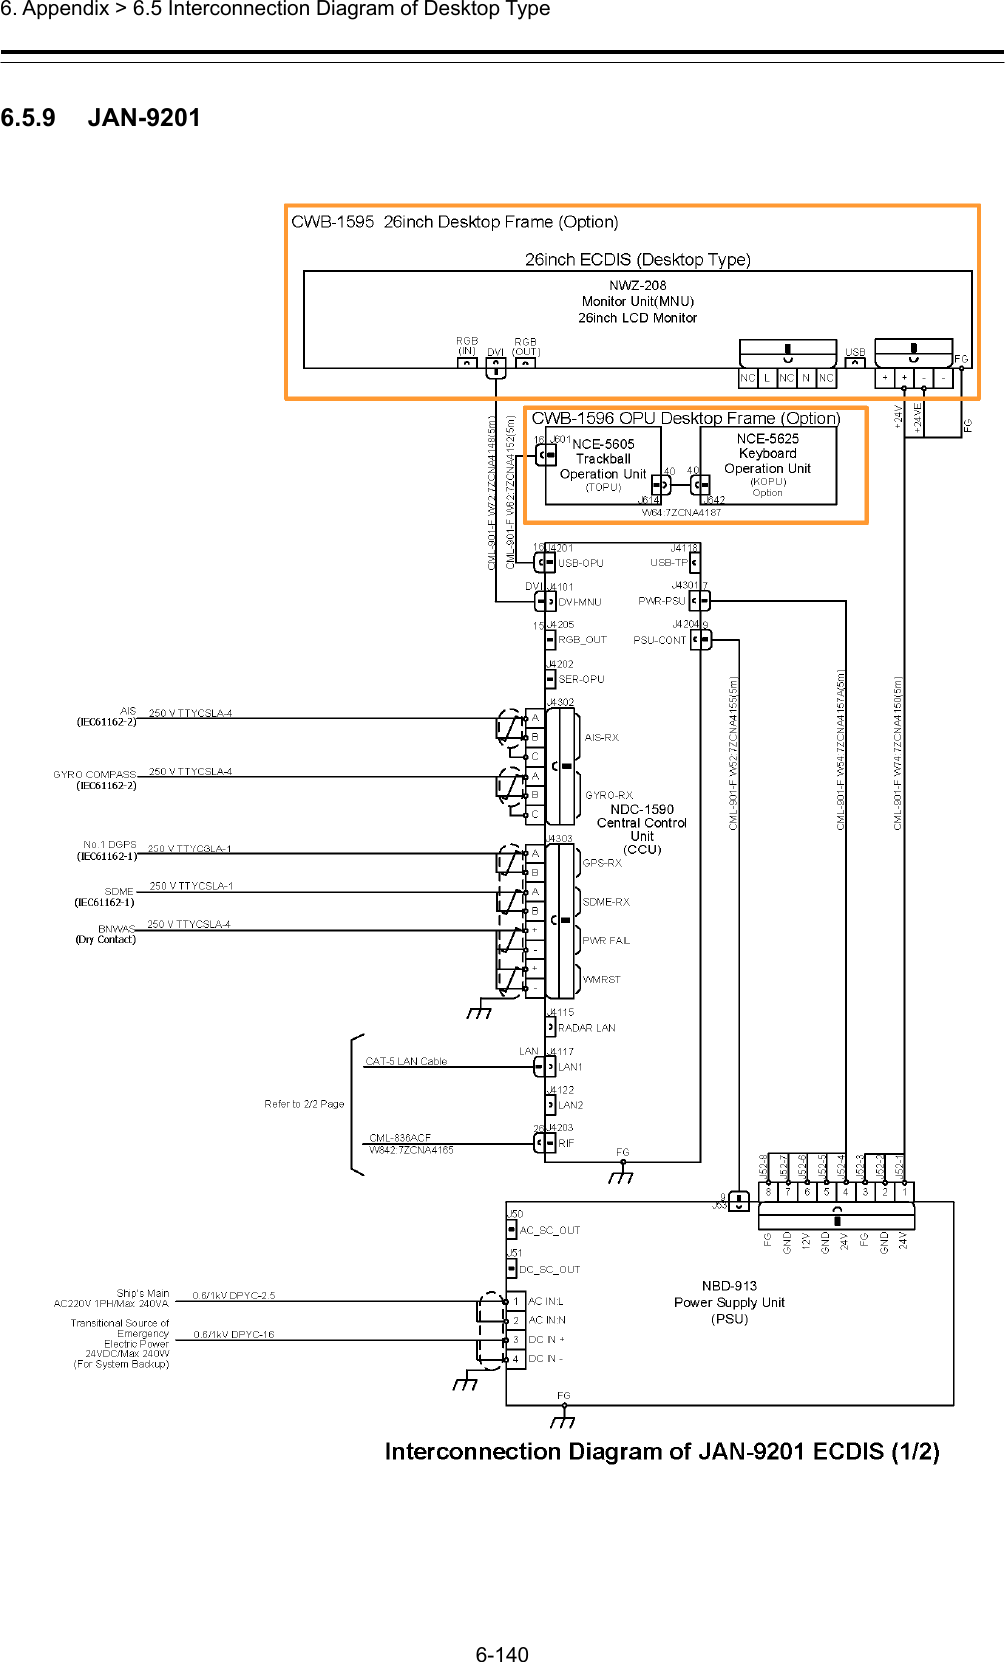  6. Appendix &gt; 6.5 Interconnection Diagram of Desktop Type 6-140  6.5.9   JAN-9201  